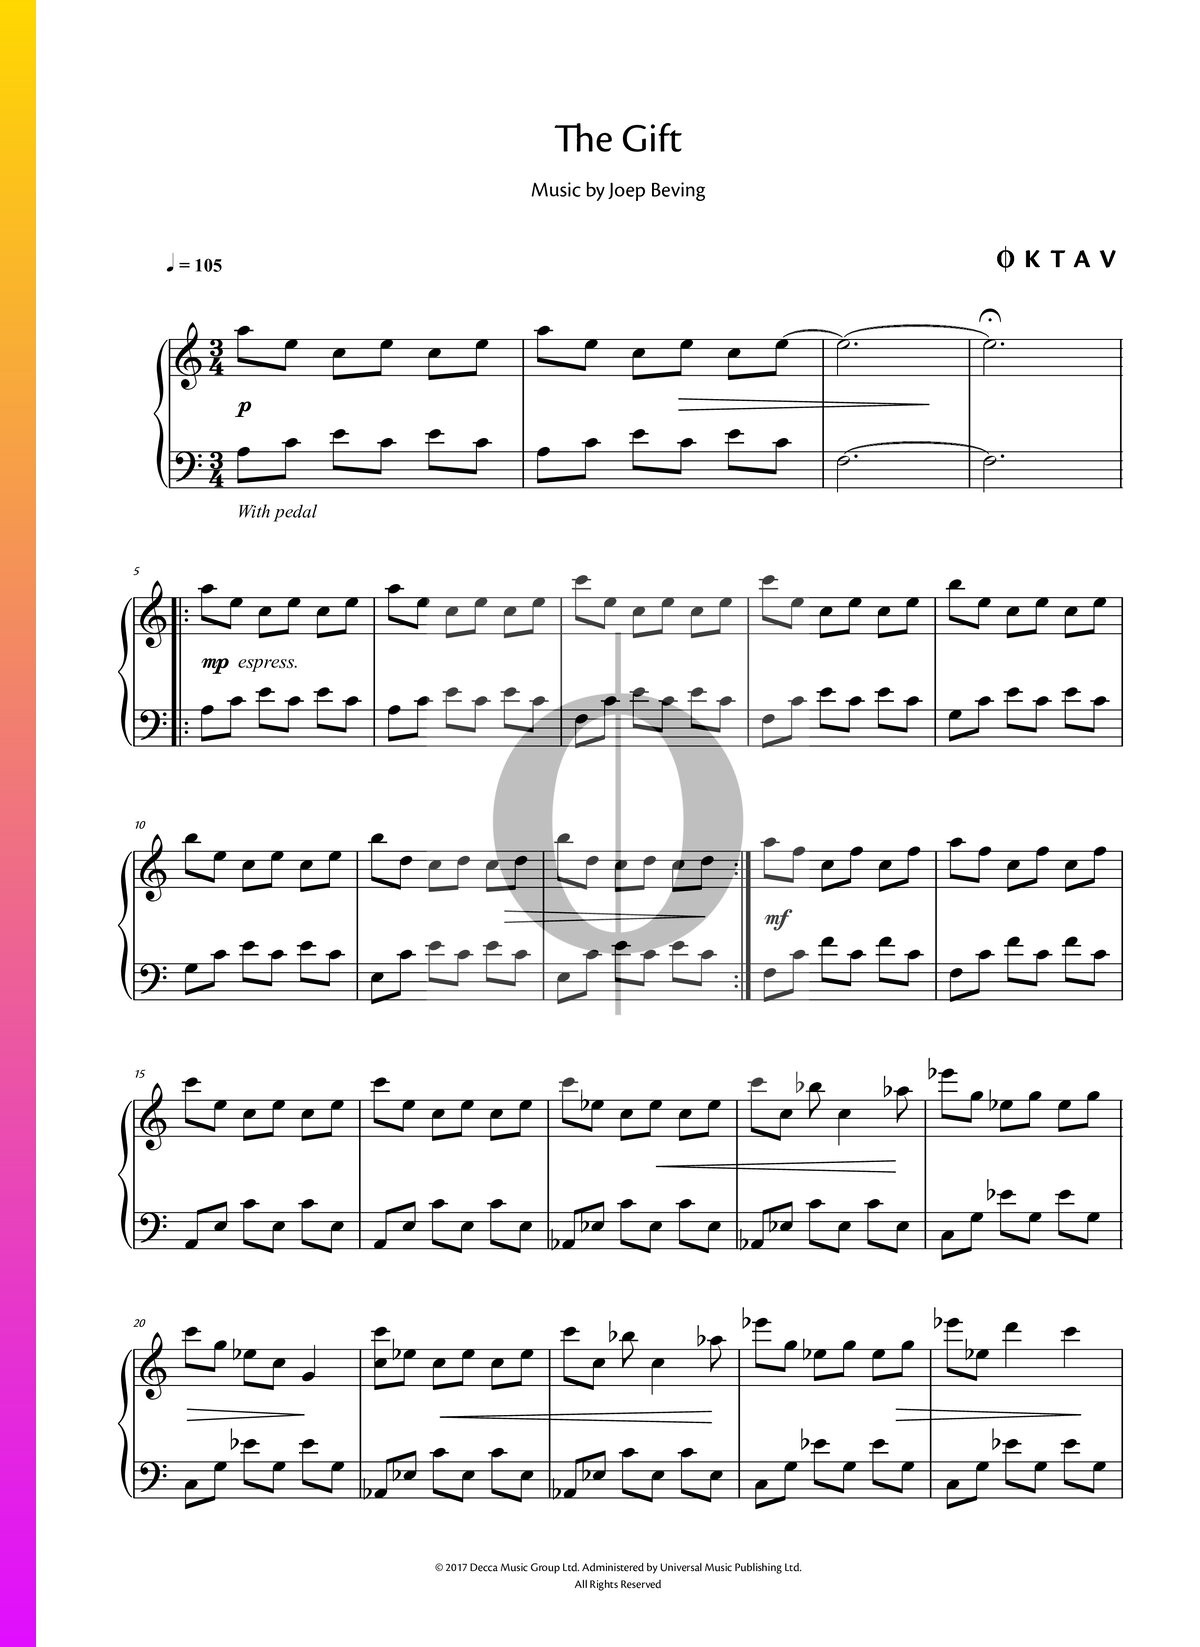 The Gift Partitura » Joep Beving (Piano | Descarga PDF - OKTAV